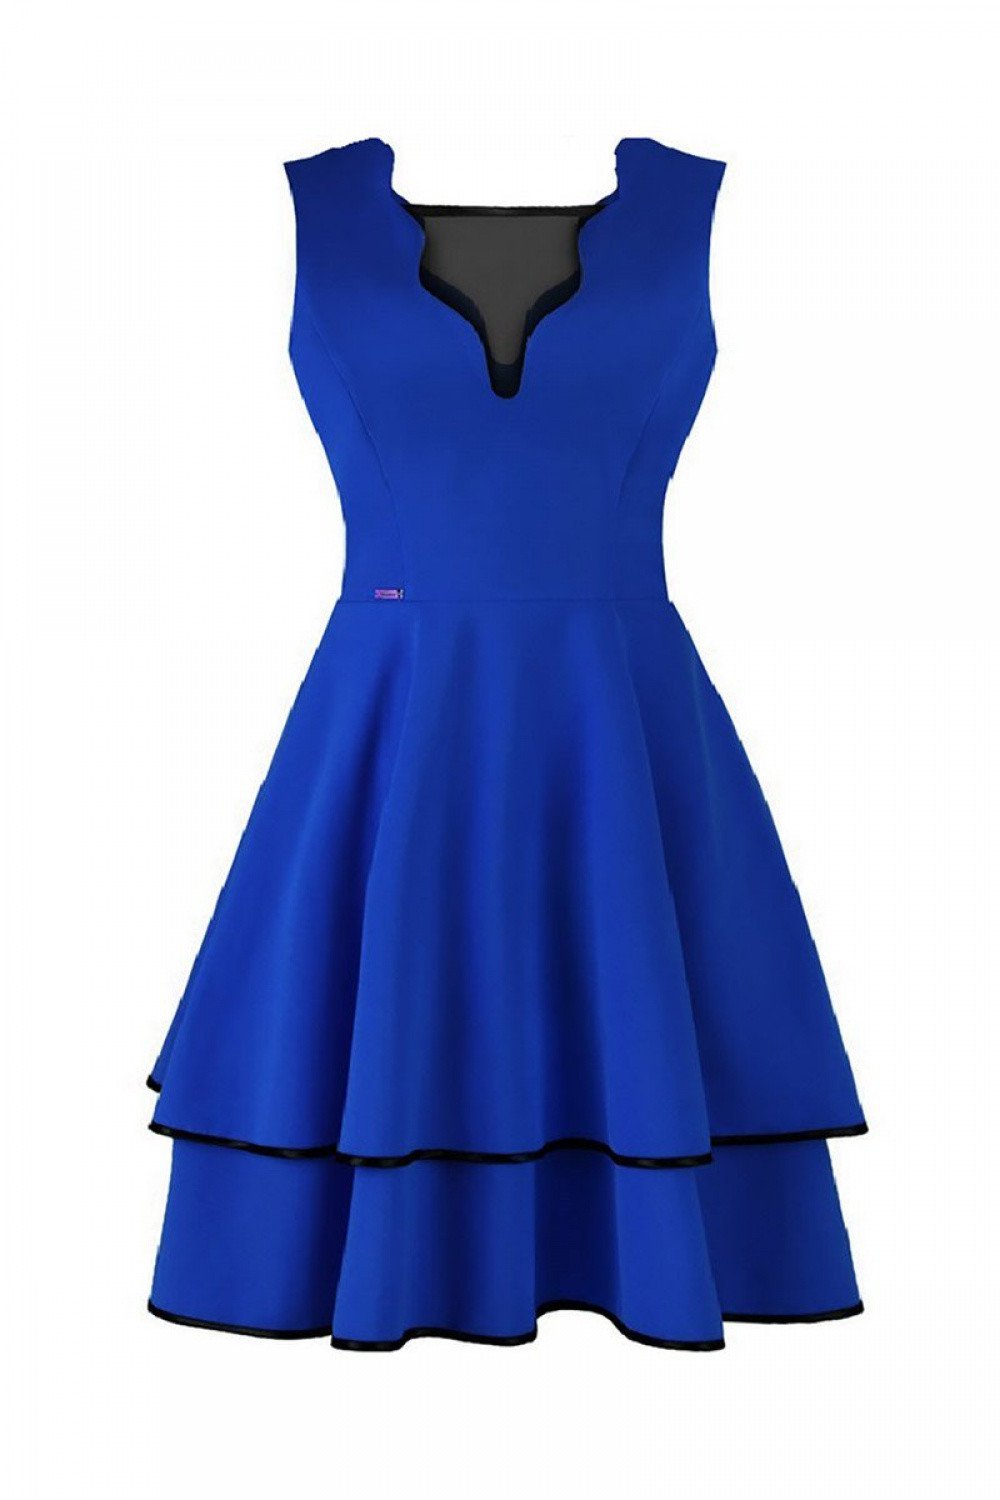 Dámské šaty Dona 108512 královská modř - Jersa královská modř 40